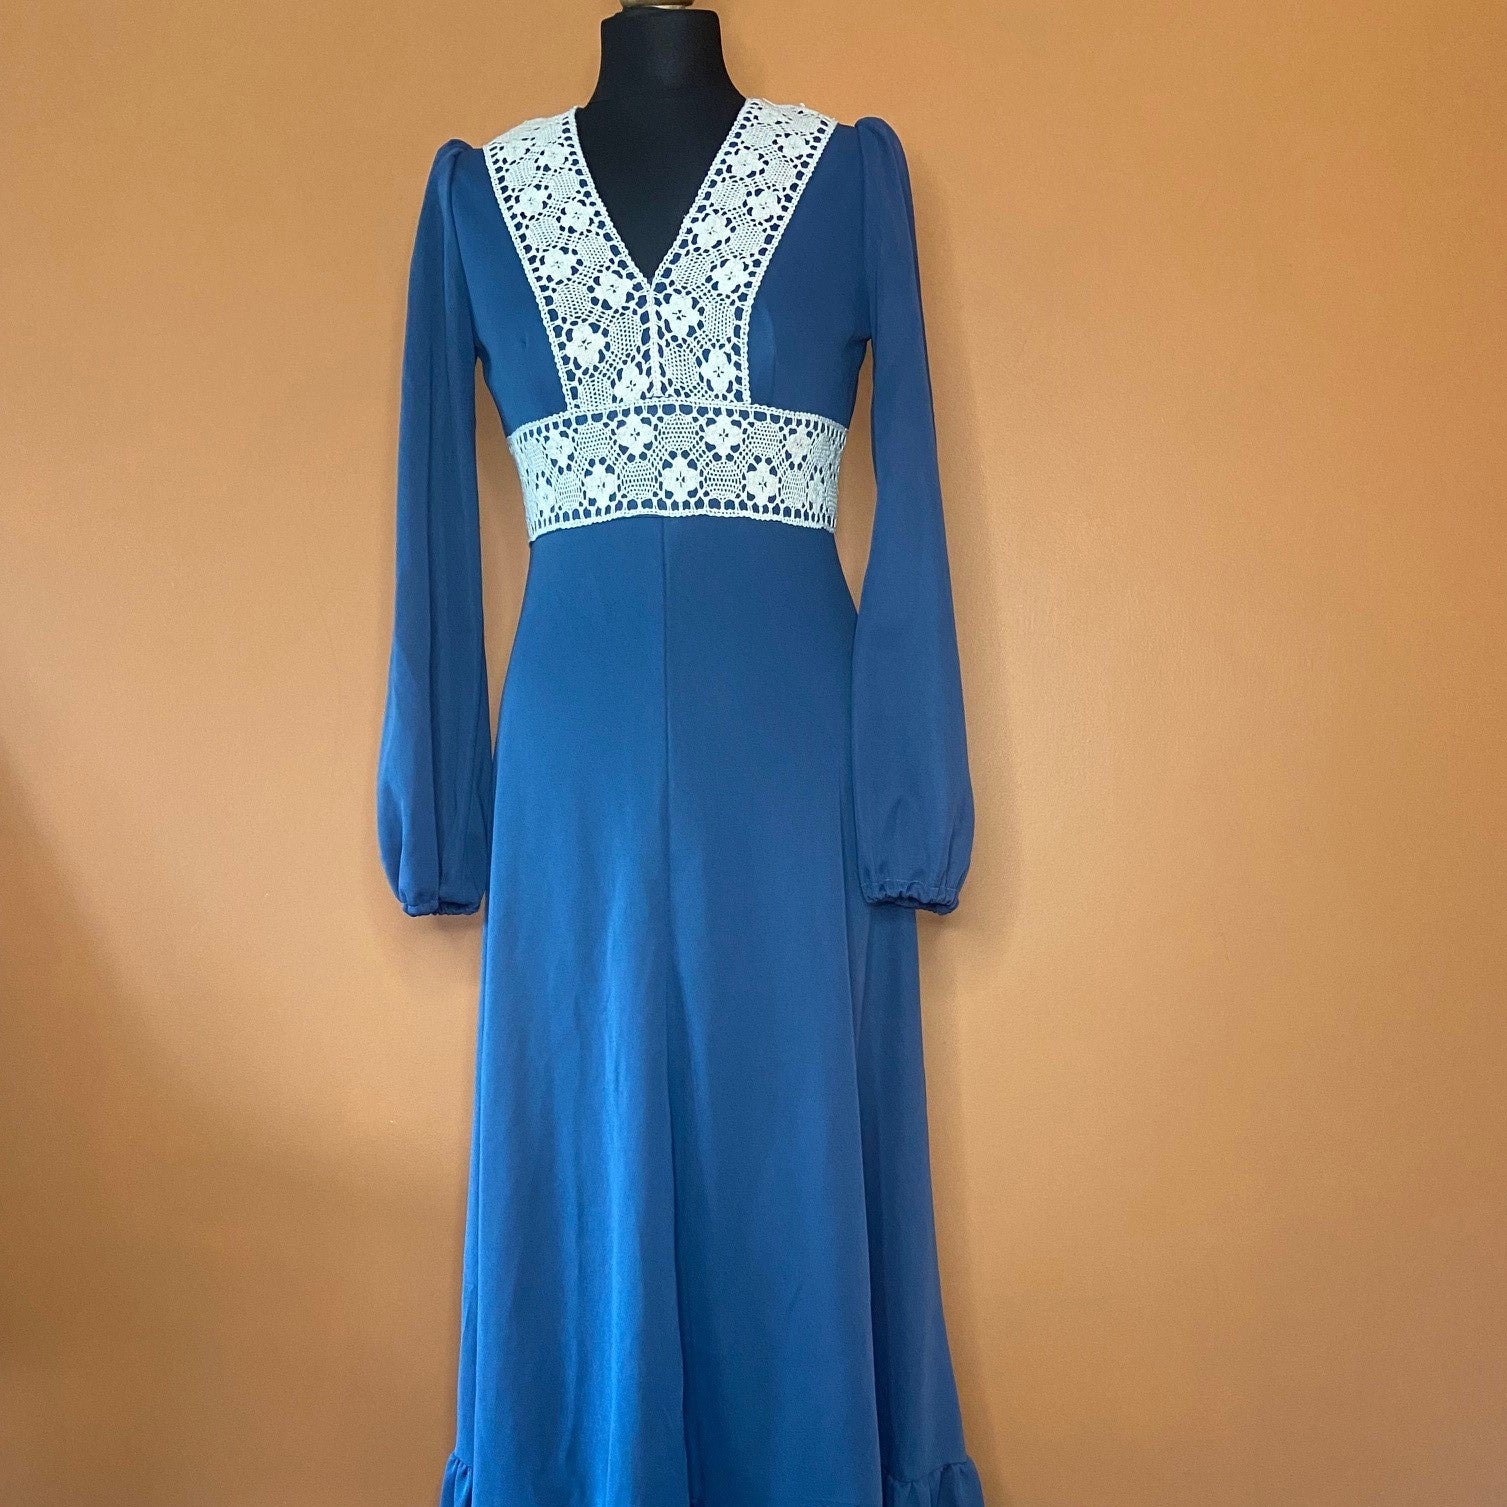 Vintage 70s blue maxi dress